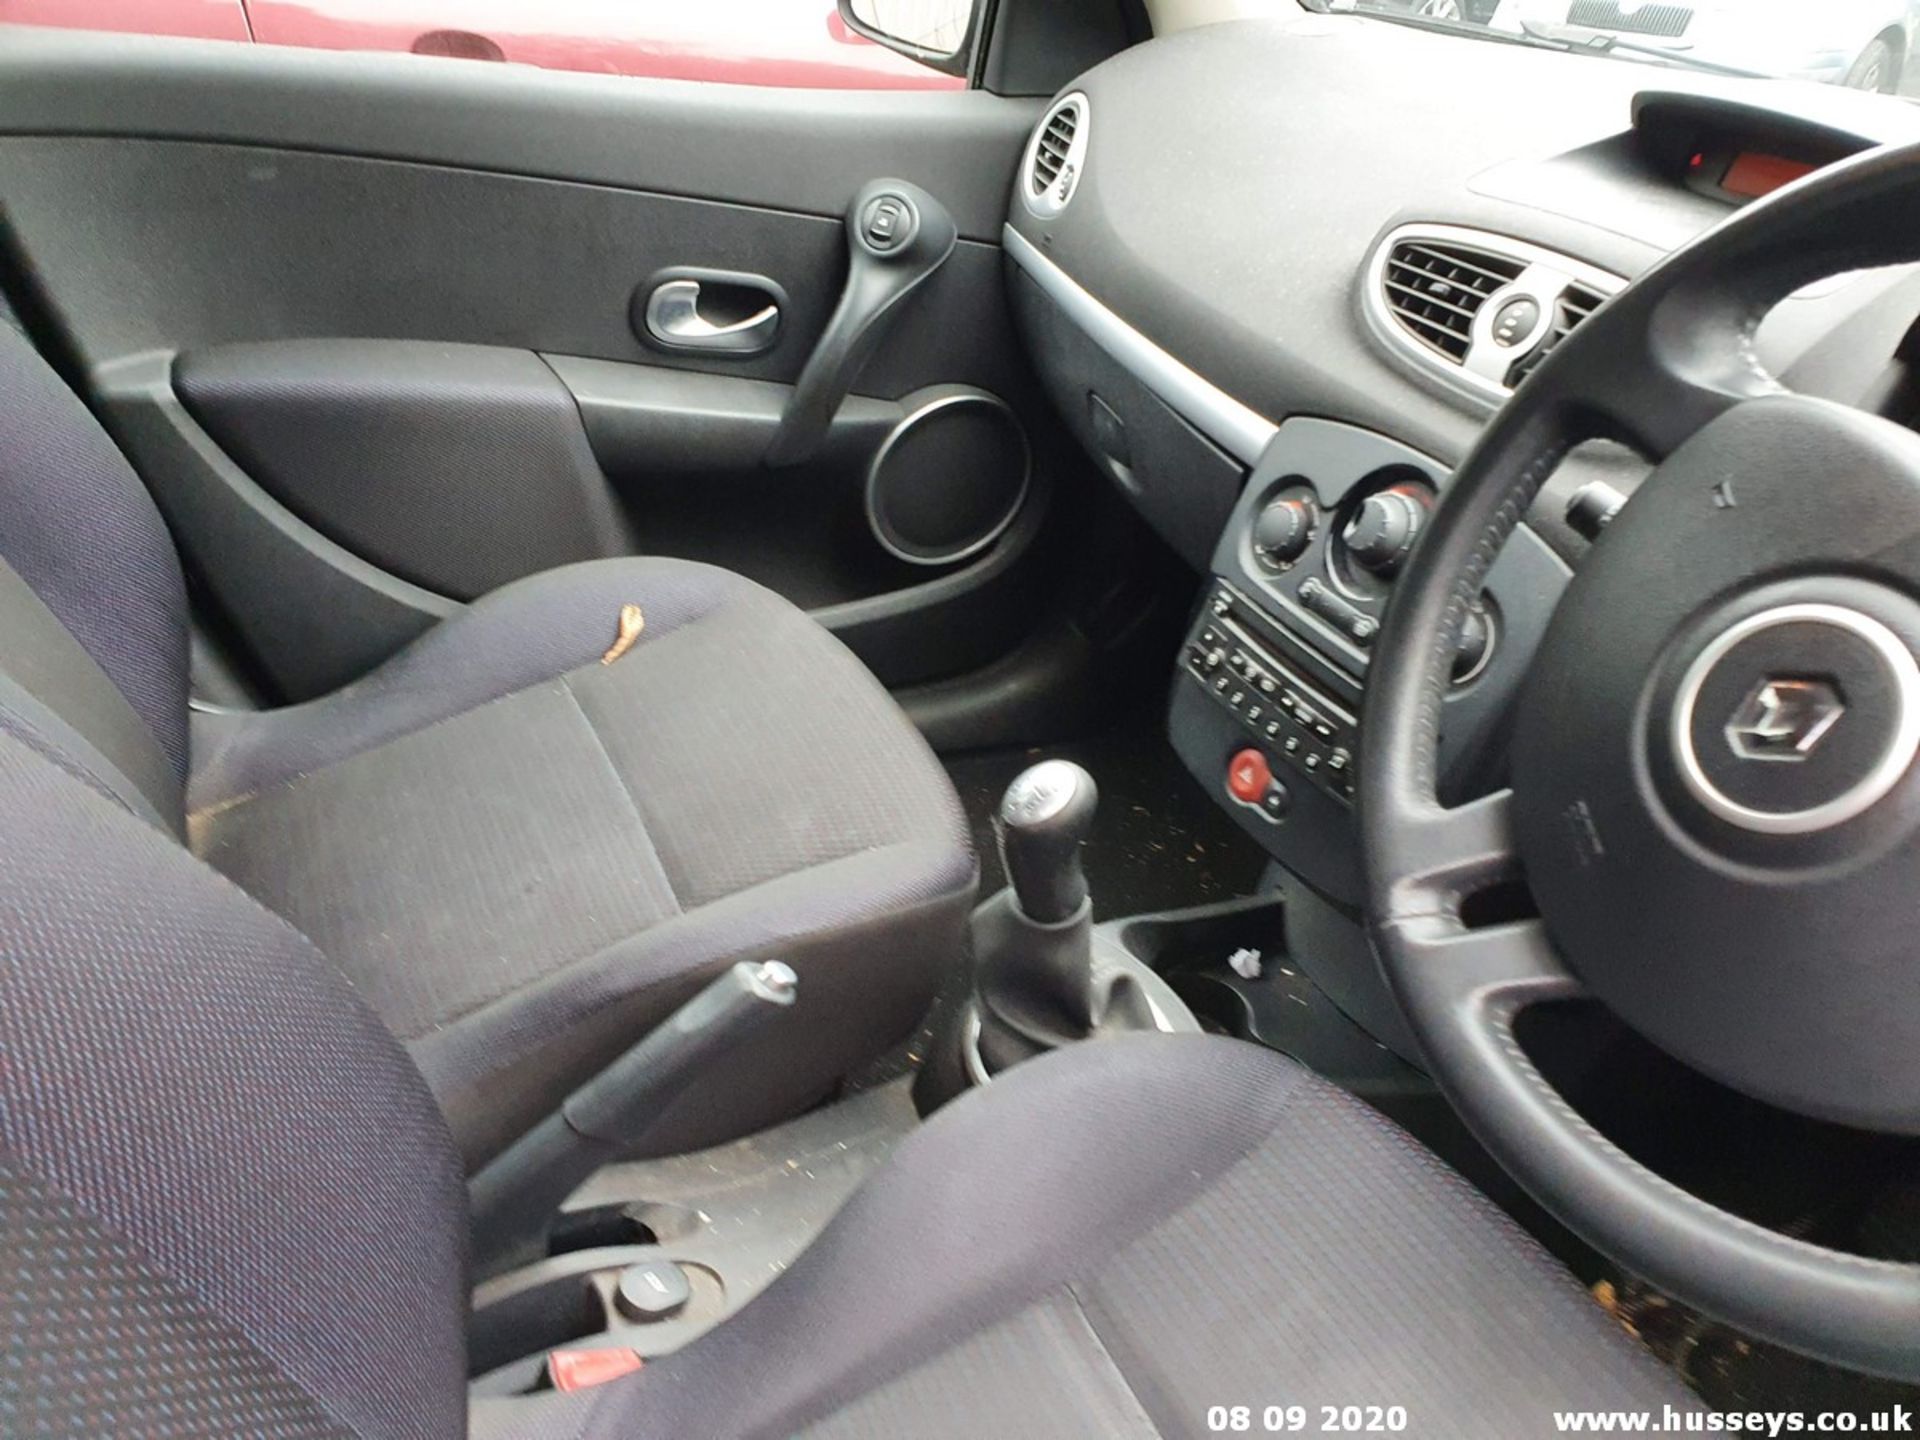 07/07 RENAULT CLIO DYNAMIQUE - 1390cc 5dr Hatchback (Black, 100k) - Image 6 of 9